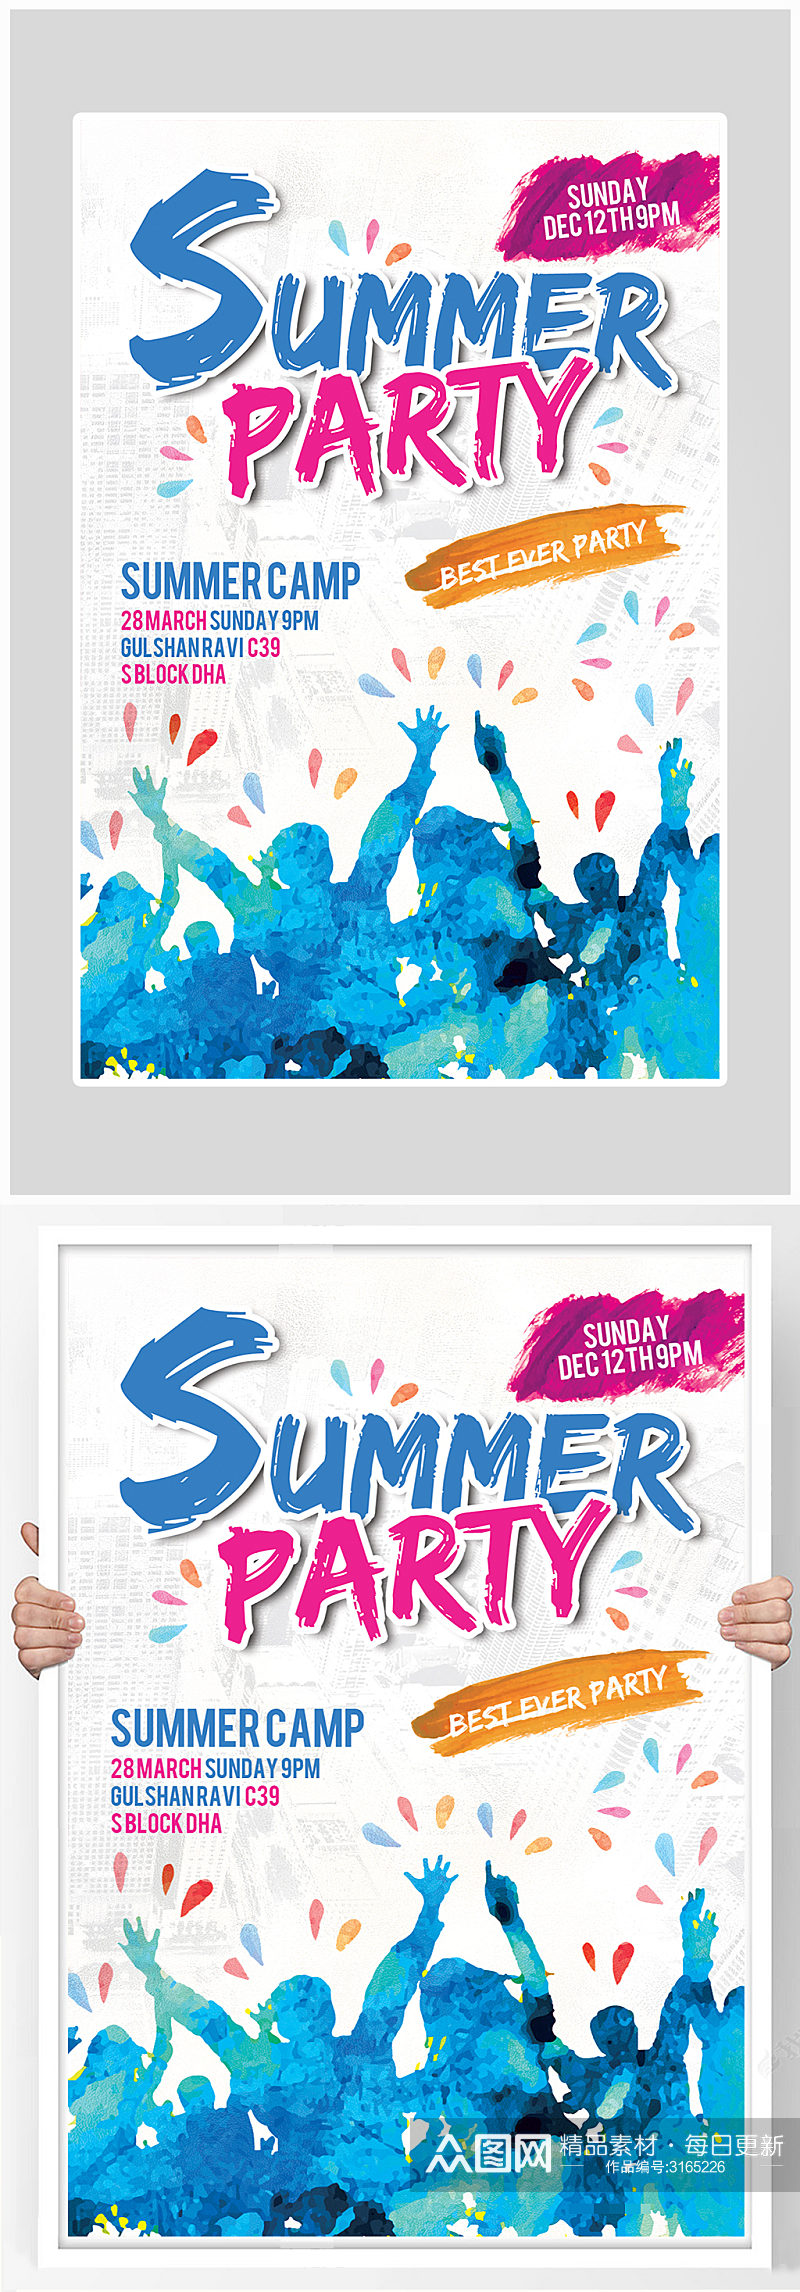 创意夏季狂欢盛典海报设计素材